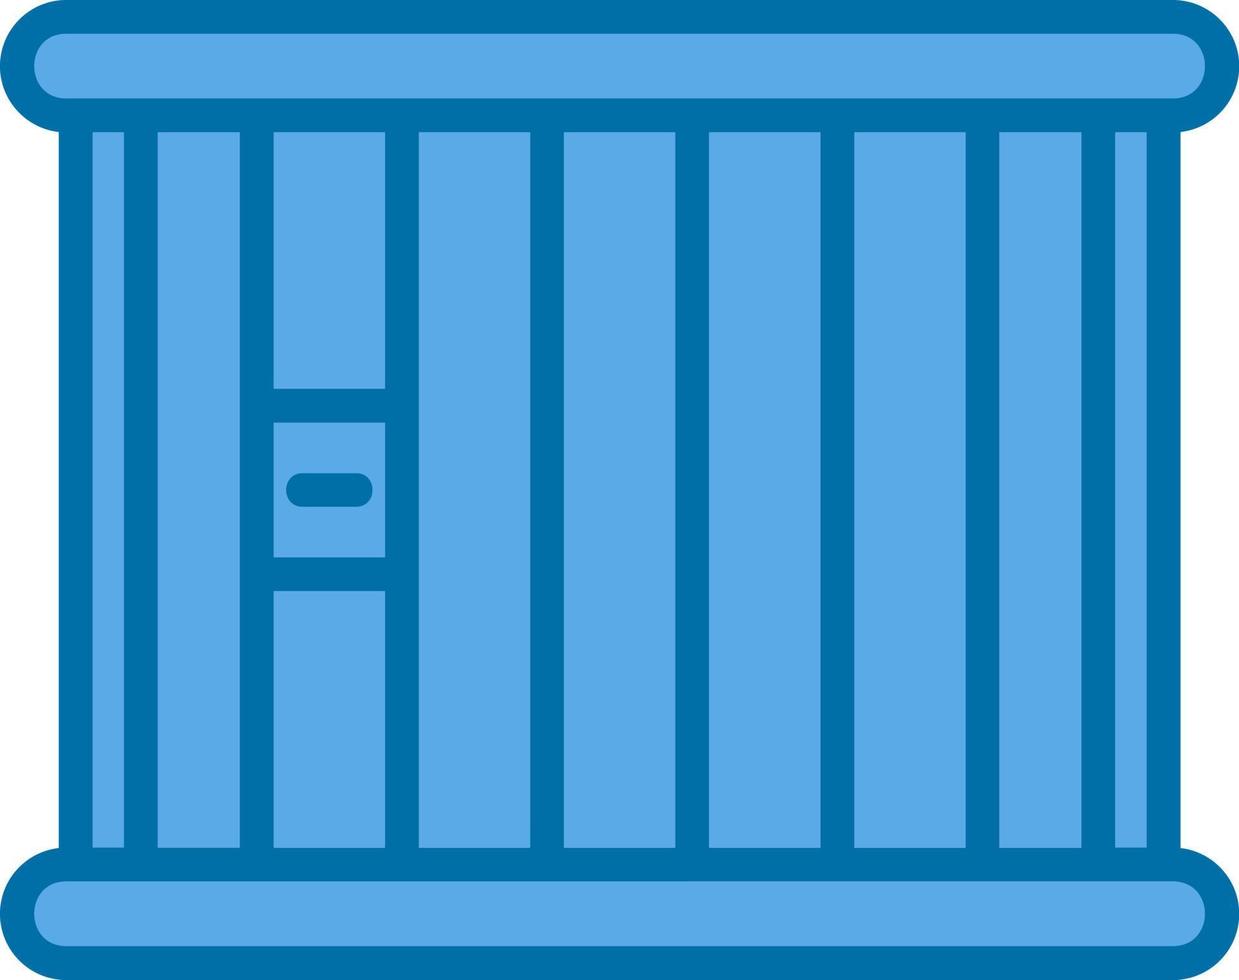 conception d'icône de vecteur de prison